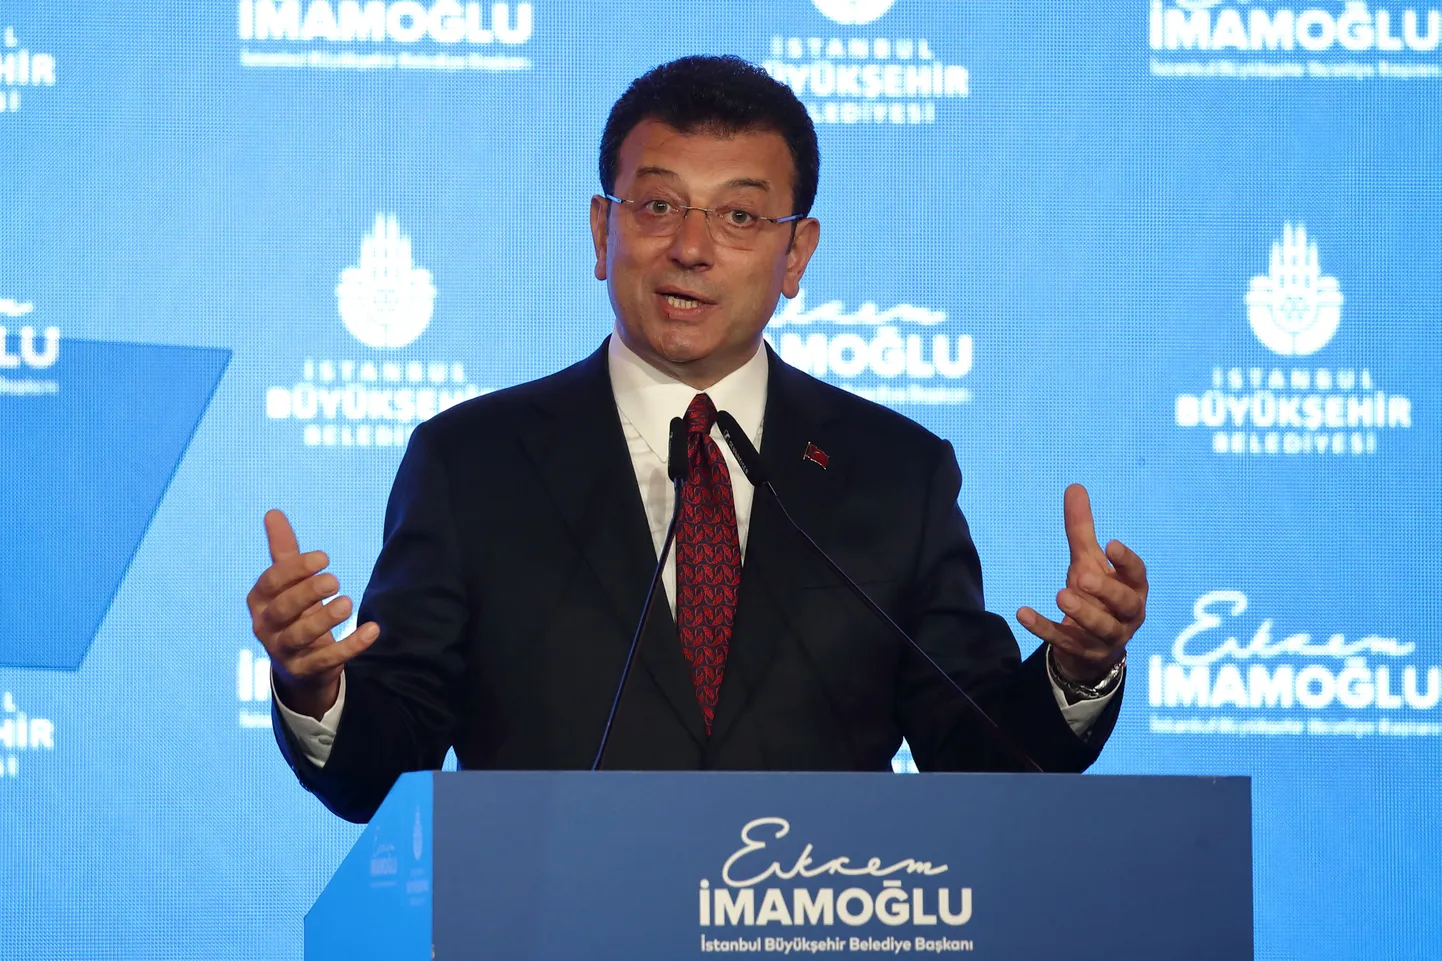 Istanbuli linnapea Ekrem İmamoğlu pressikonverentsil.